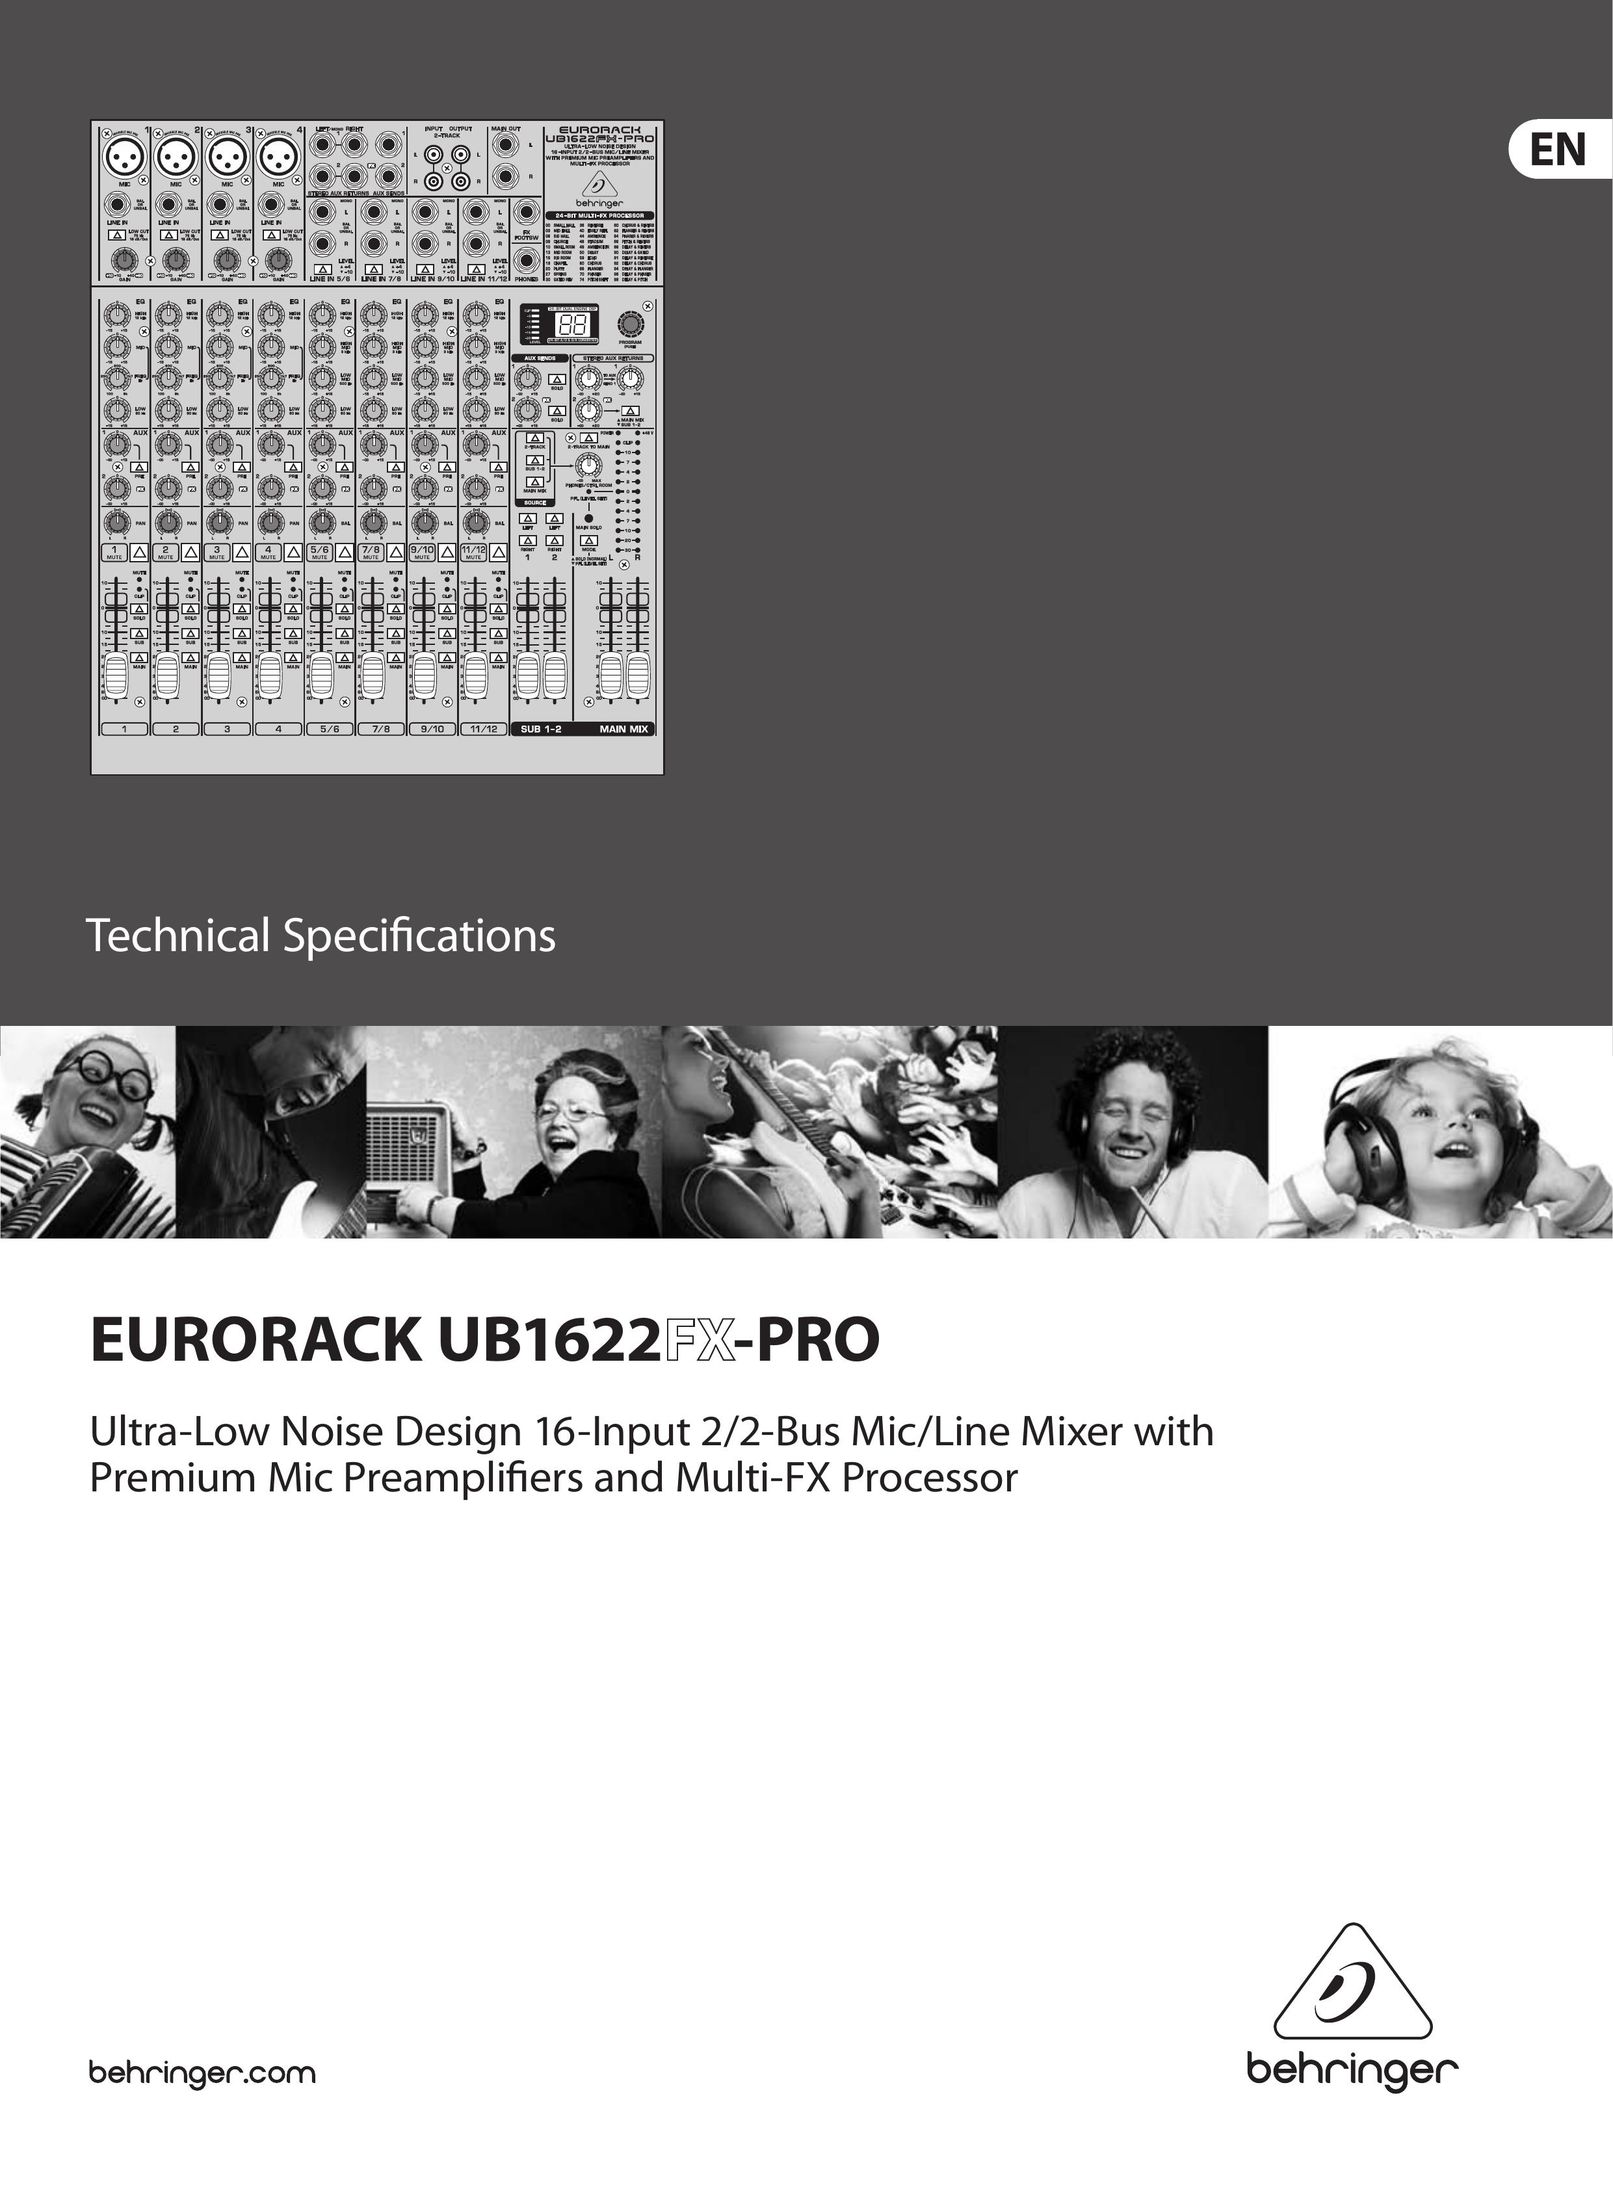 Behringer UB1622FX-PRO Car Amplifier User Manual